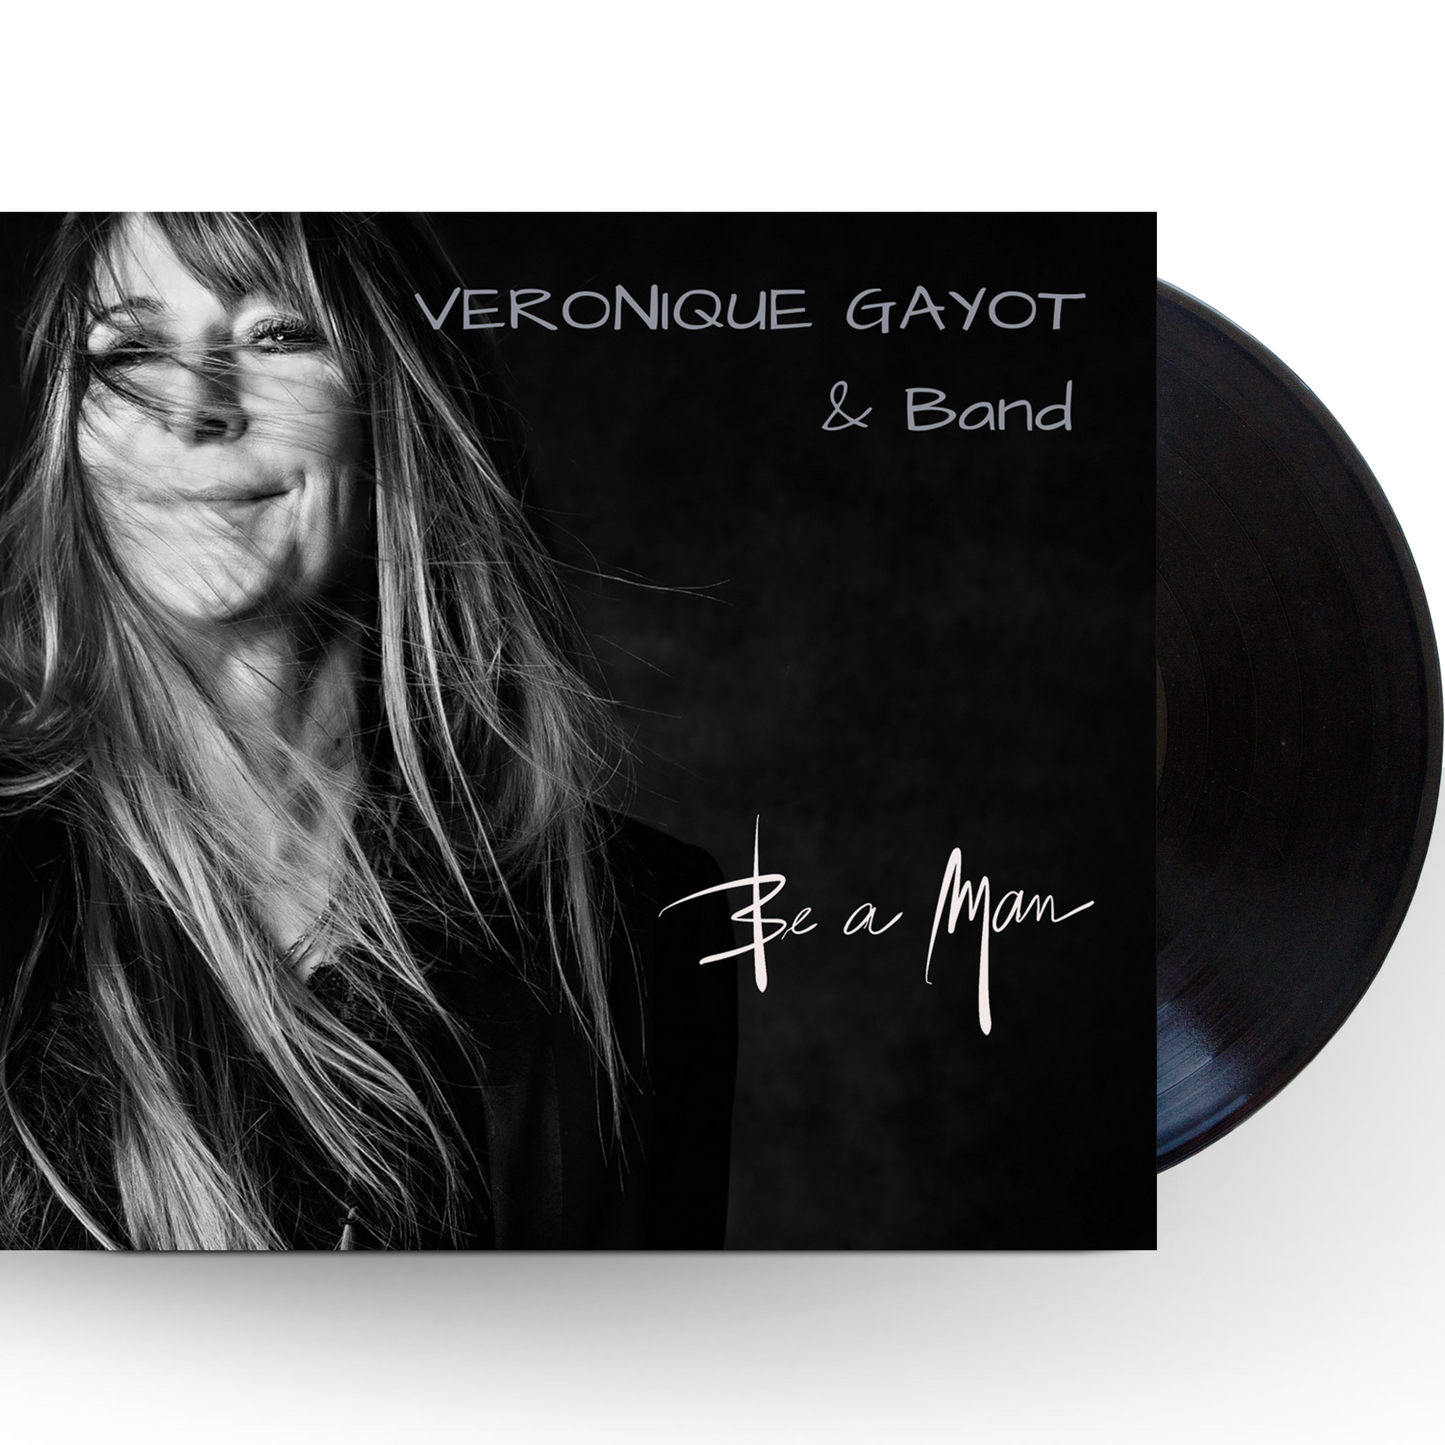 VÉRONIQUE GAYOT & Band - Be A Man, LP - Pre Sale